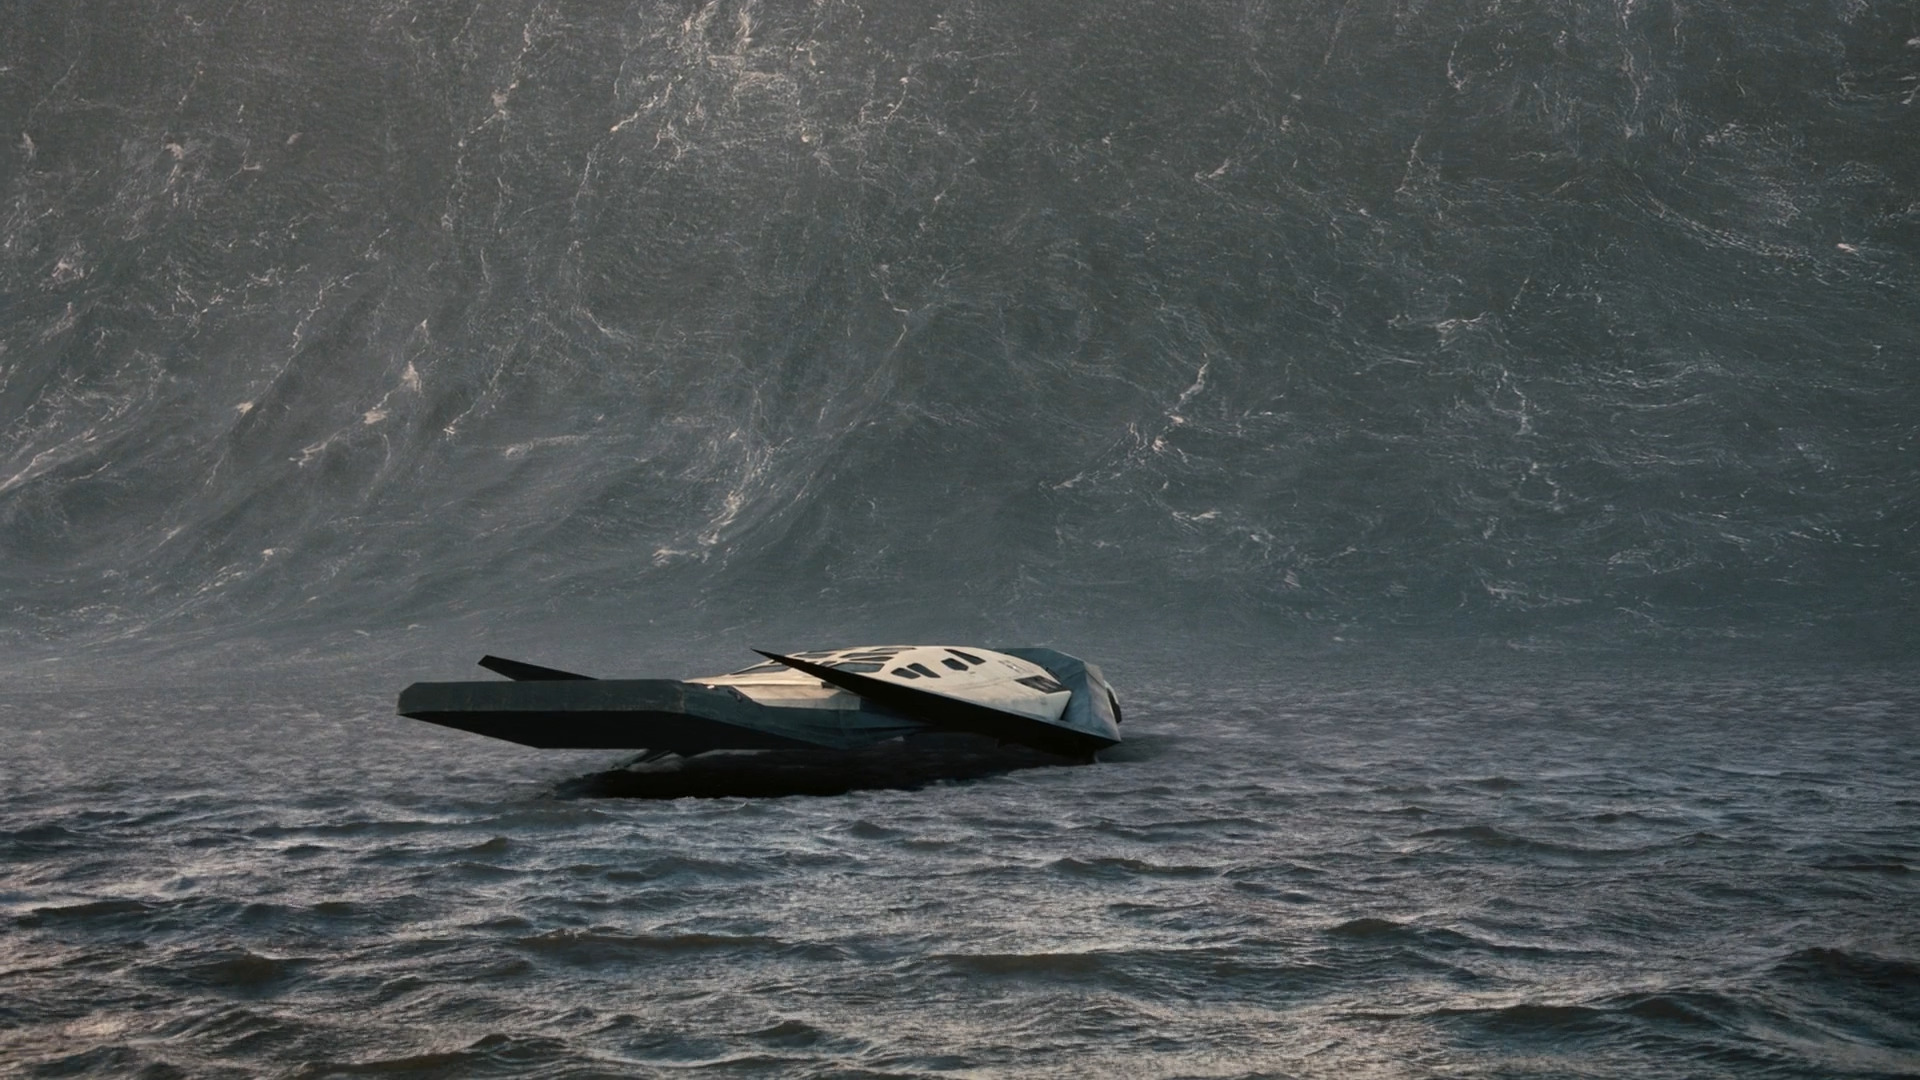 Interstellar (movie), Film Stills Wallpaper